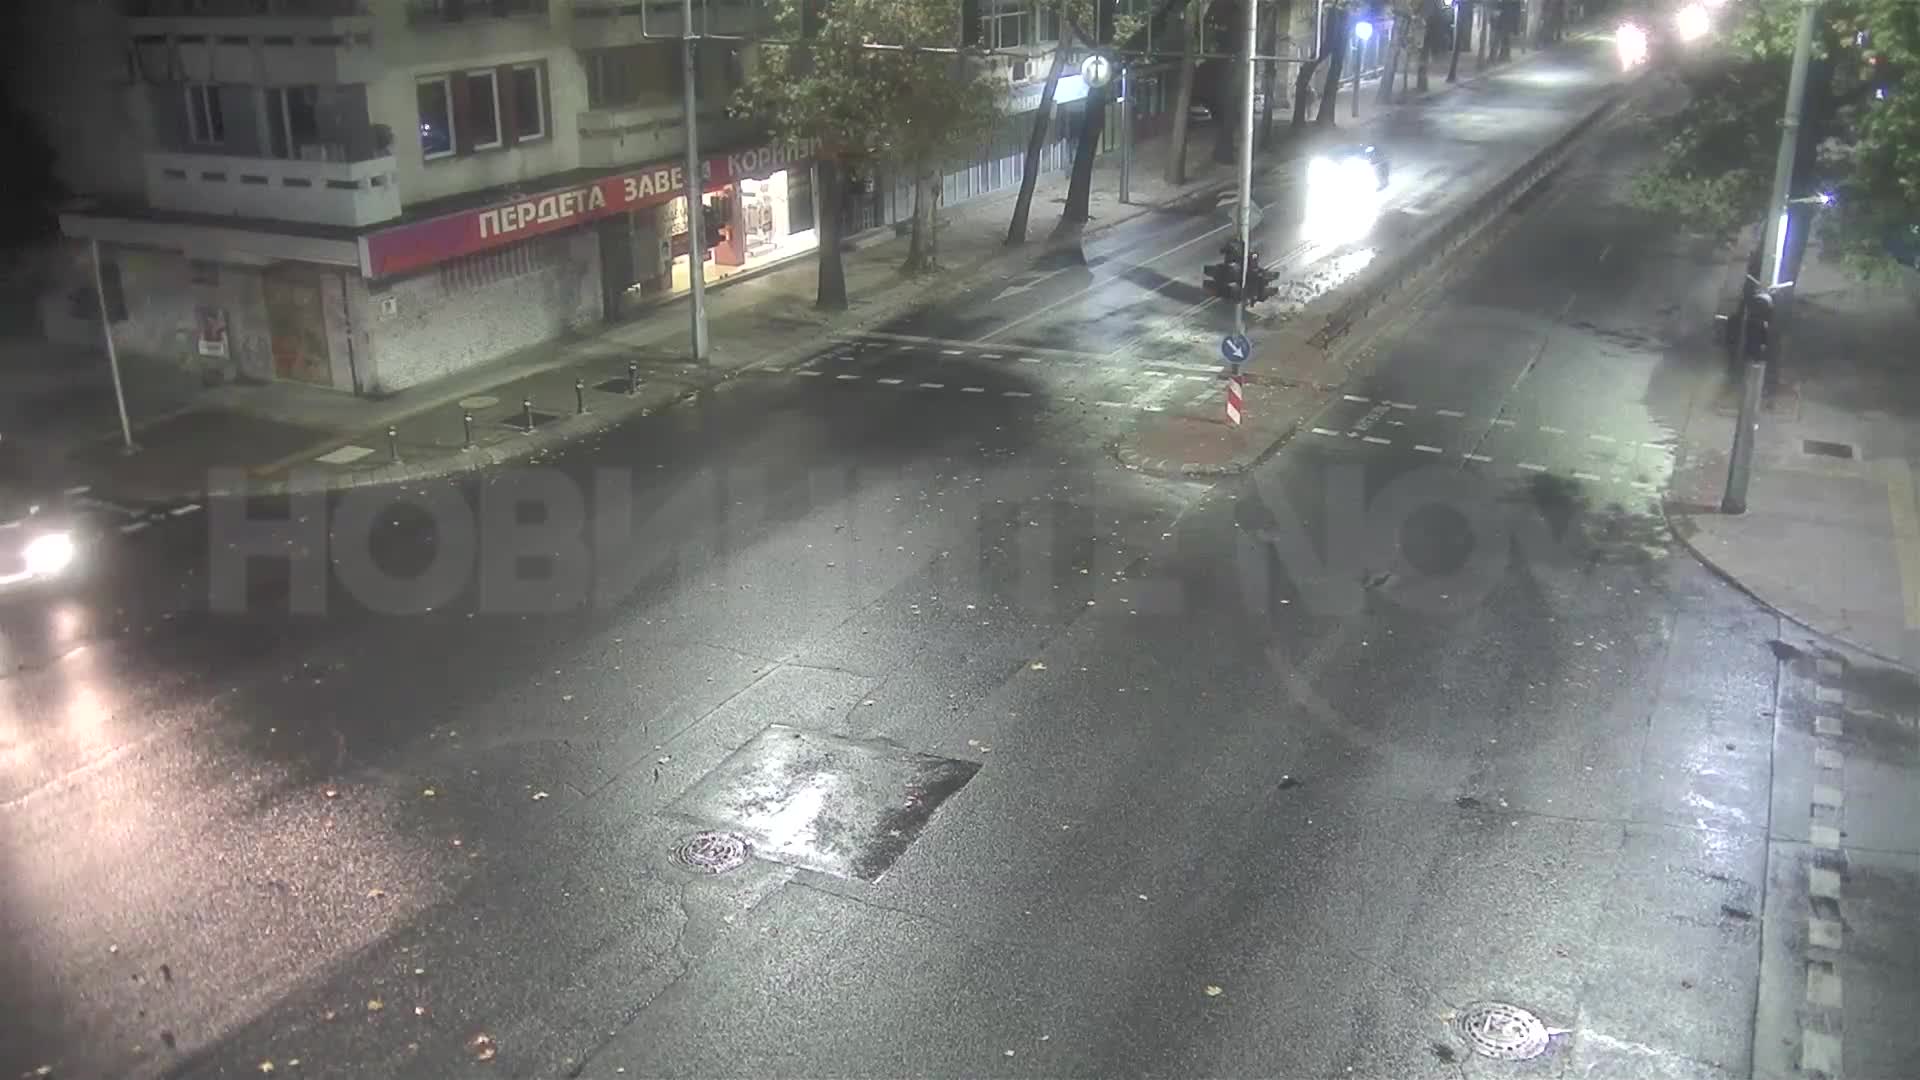 ЕКСКЛУЗИВНИ кадри от катастрофата с млад шофьор в Пловдив (ВИДЕО)